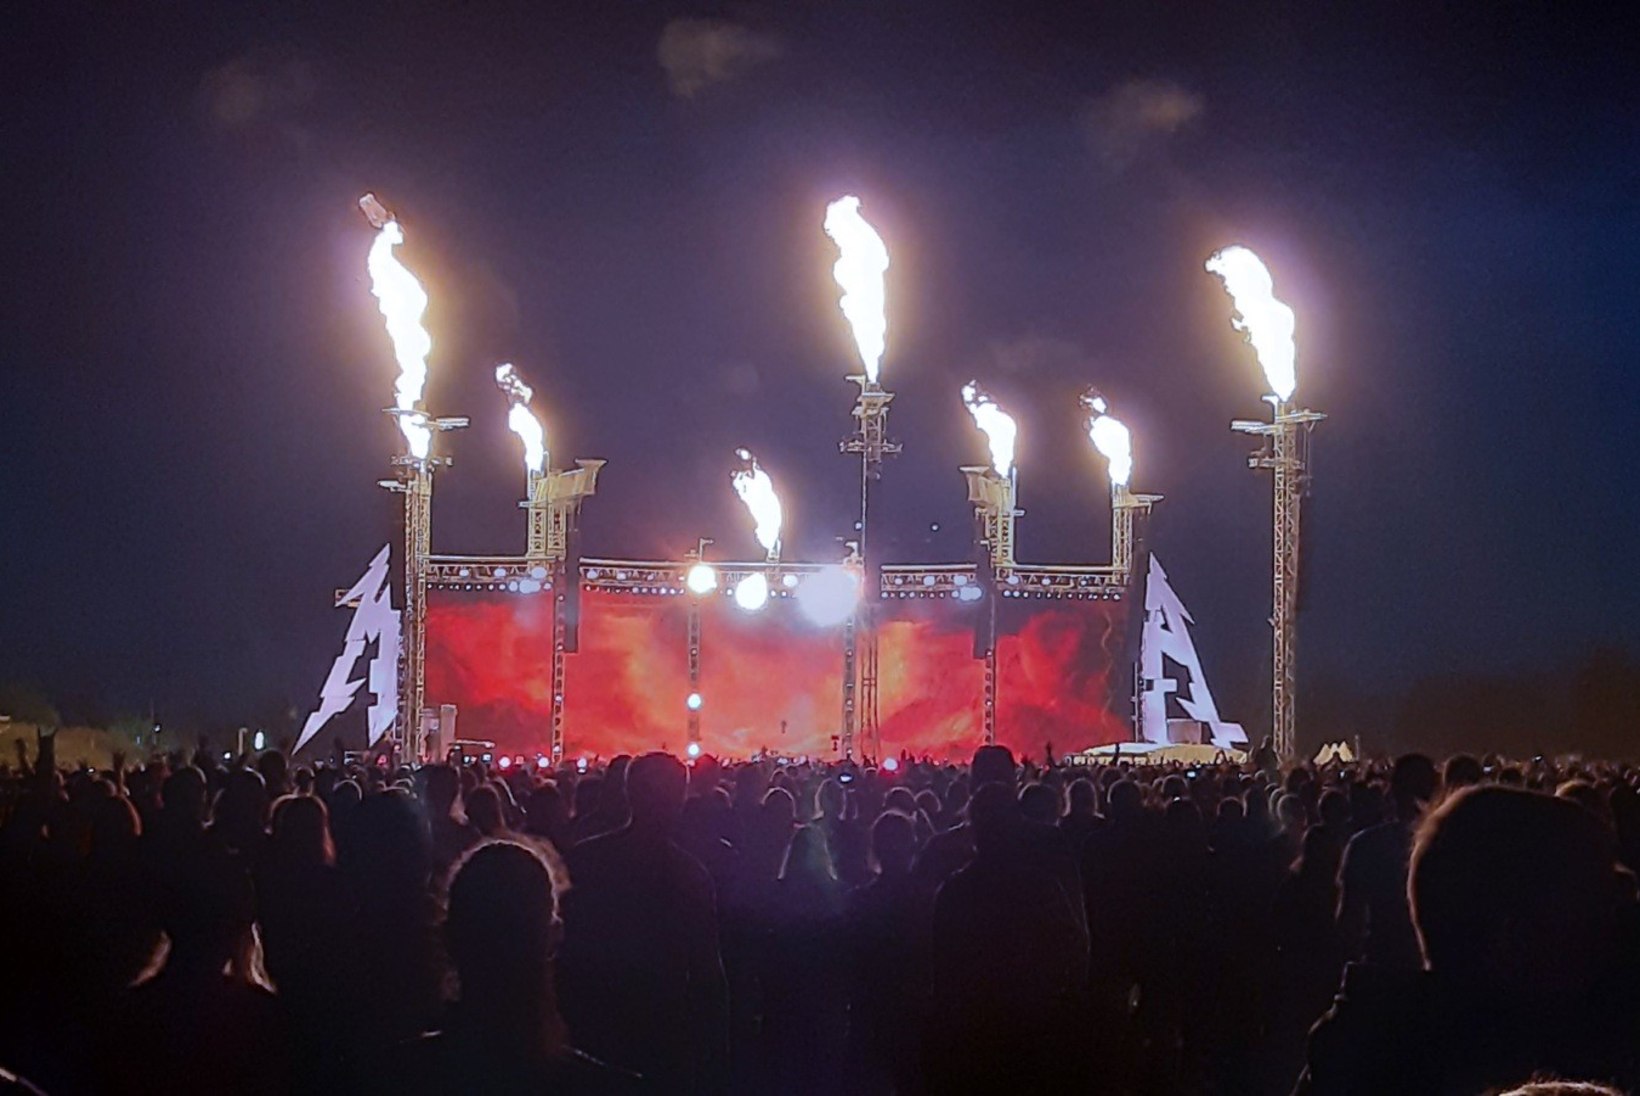 Vau, mis mass! Korraldaja jagas Metallica Tartu kontserdist vägevaid pilte